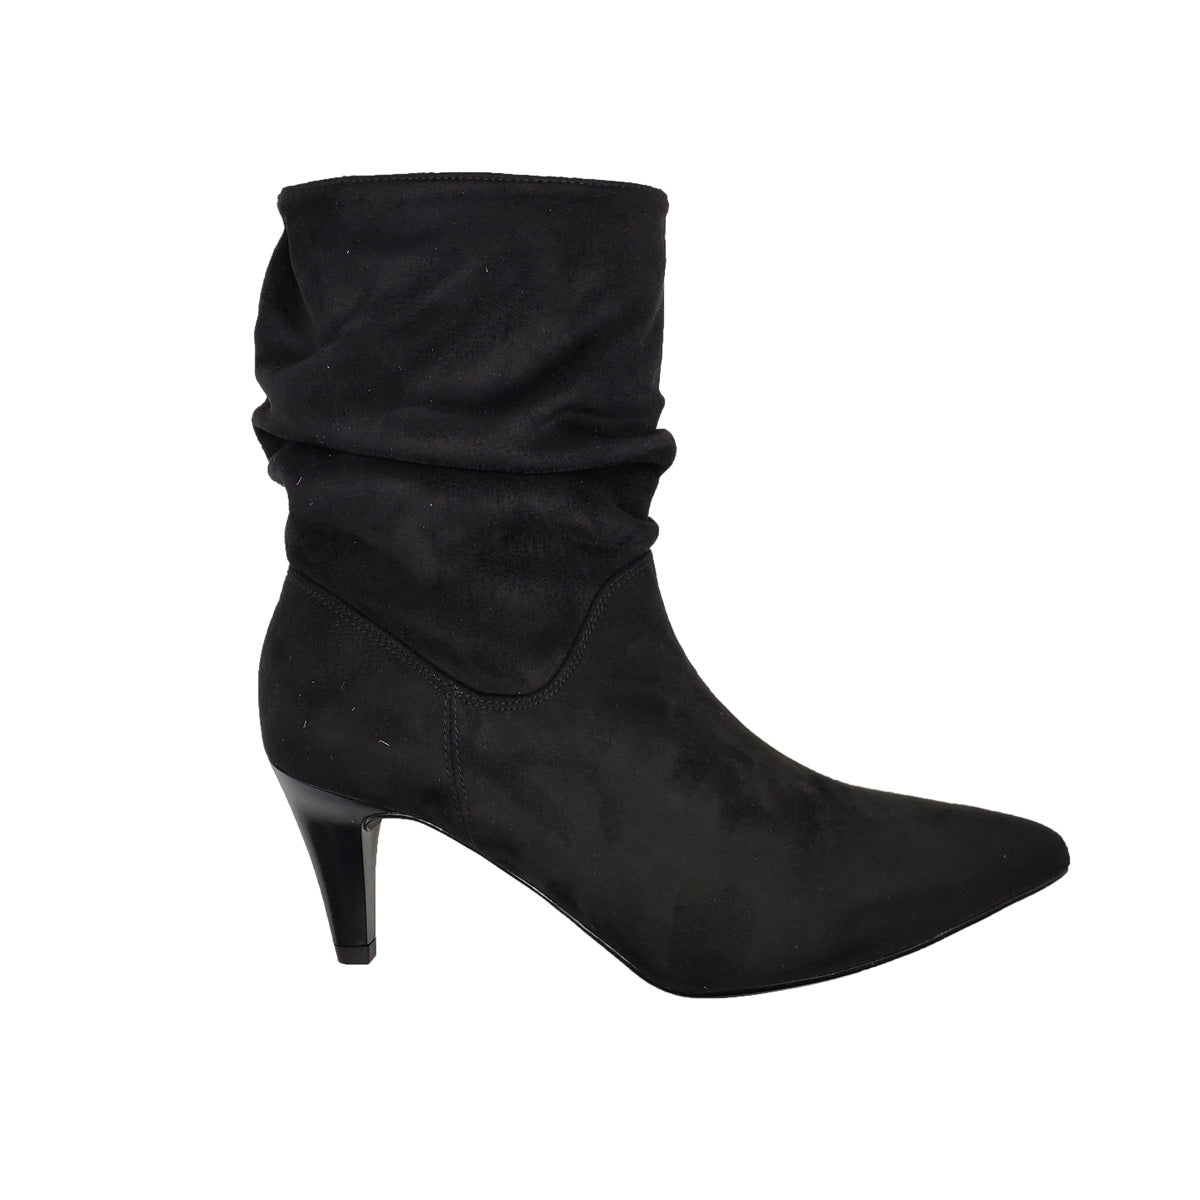 Chaussures pour femmes Bottines frisées en daim noir avec talons hauts